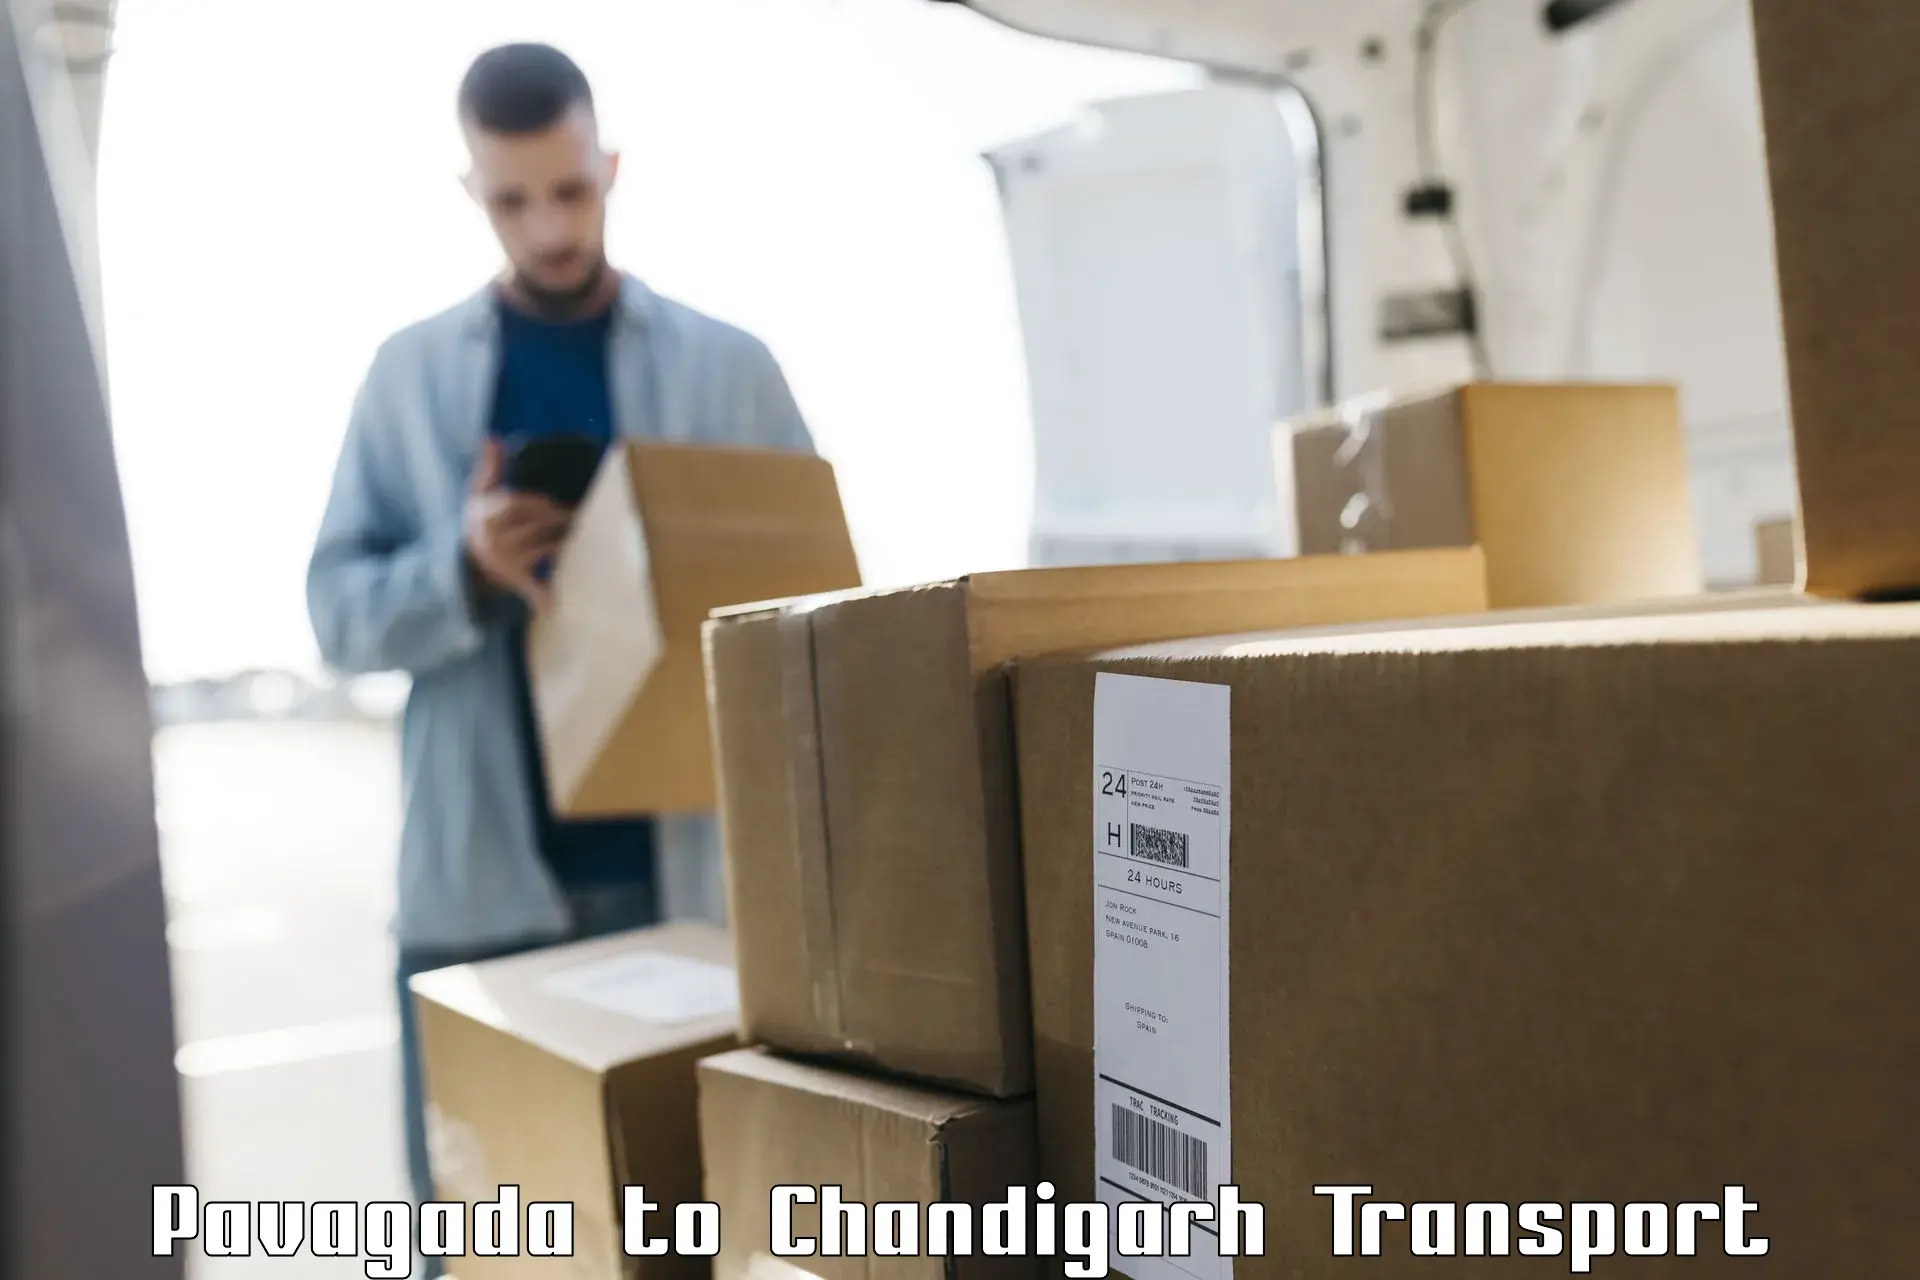 Cargo train transport services Pavagada to Chandigarh